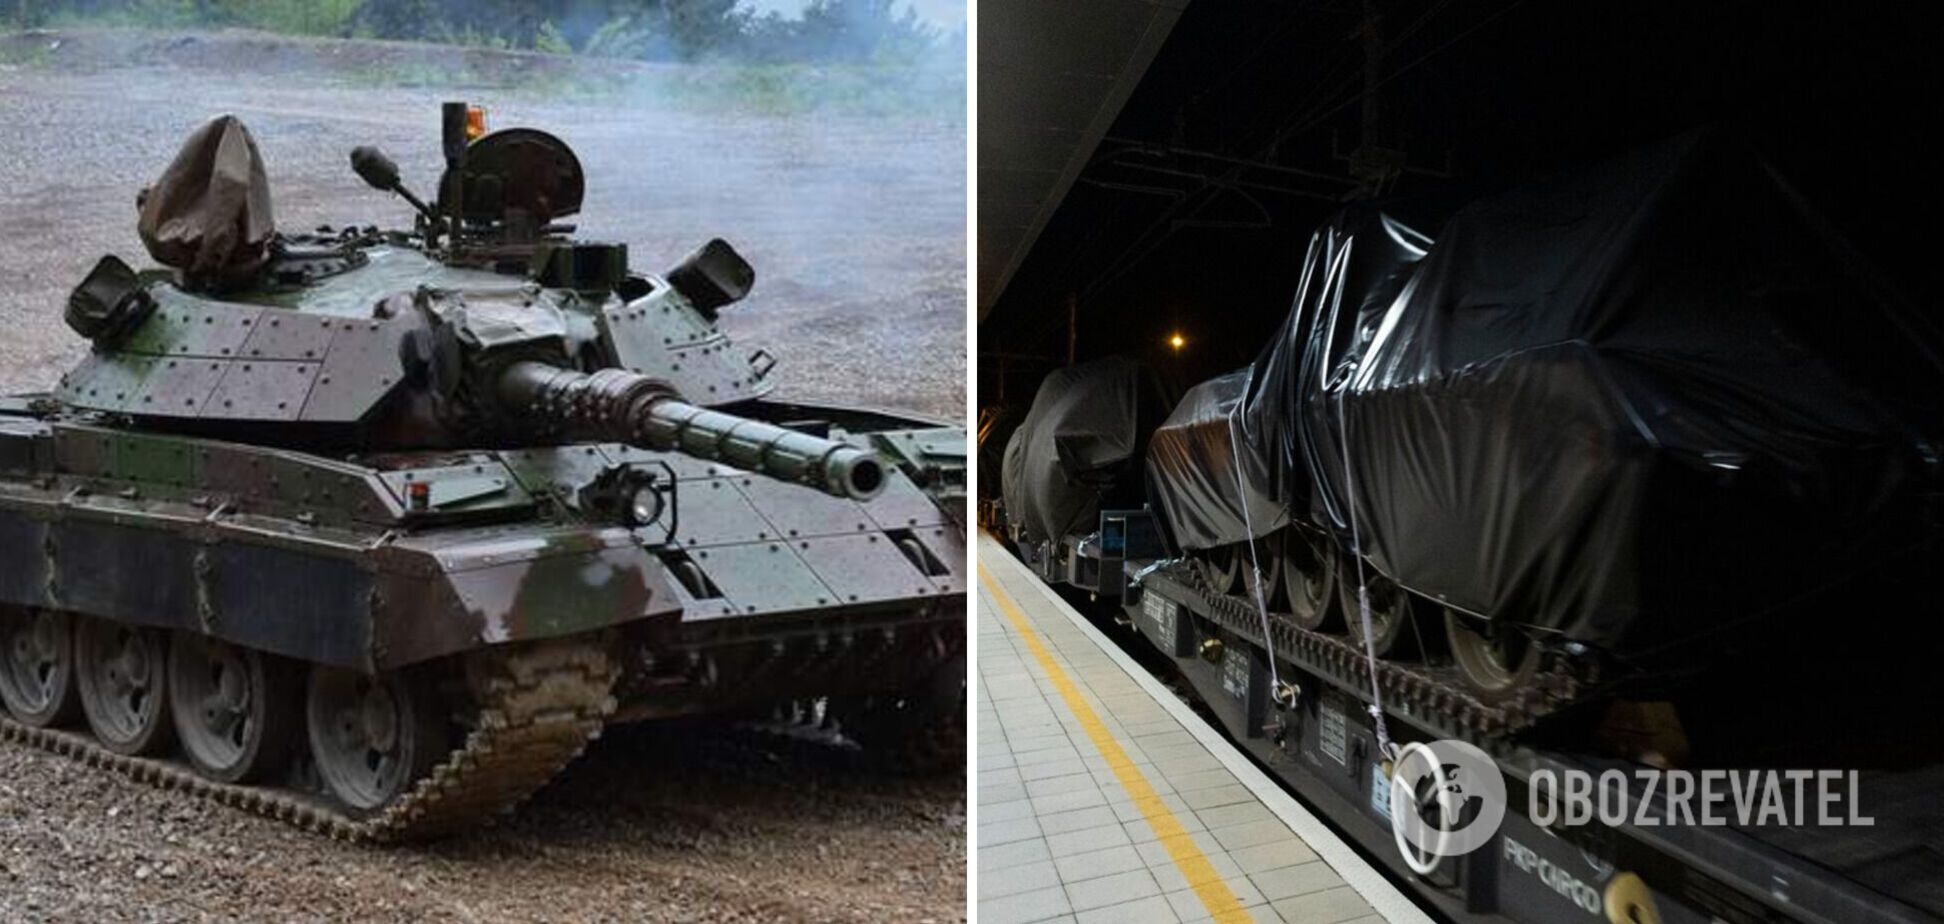 Словения передала Украине партию танков М-55S: что известно о тяжелом вооружении